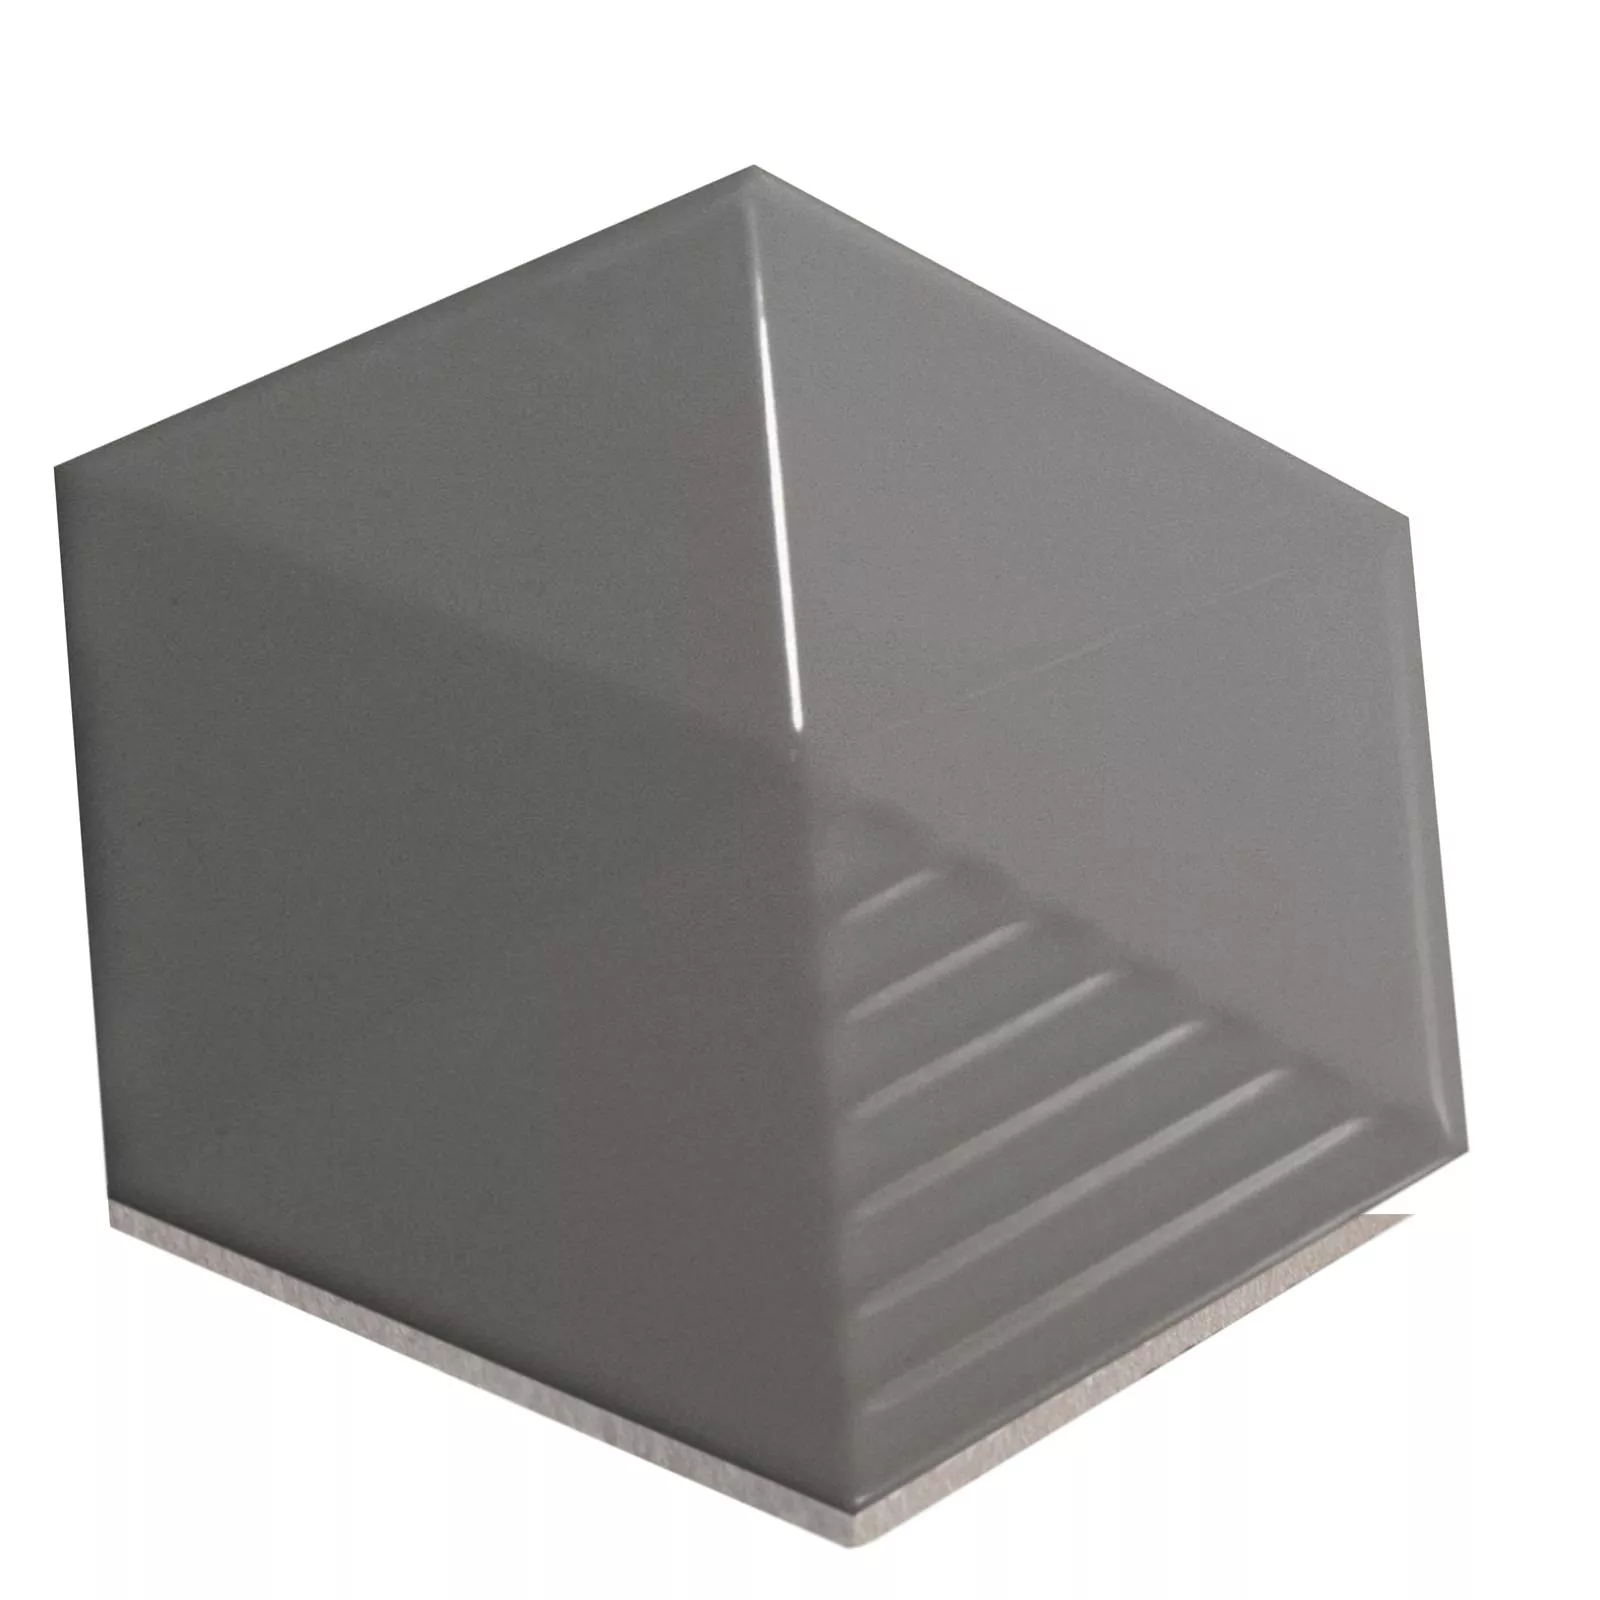 Wandtegels Rockford 3D Hexagon 12,4x10,7cm Grijs